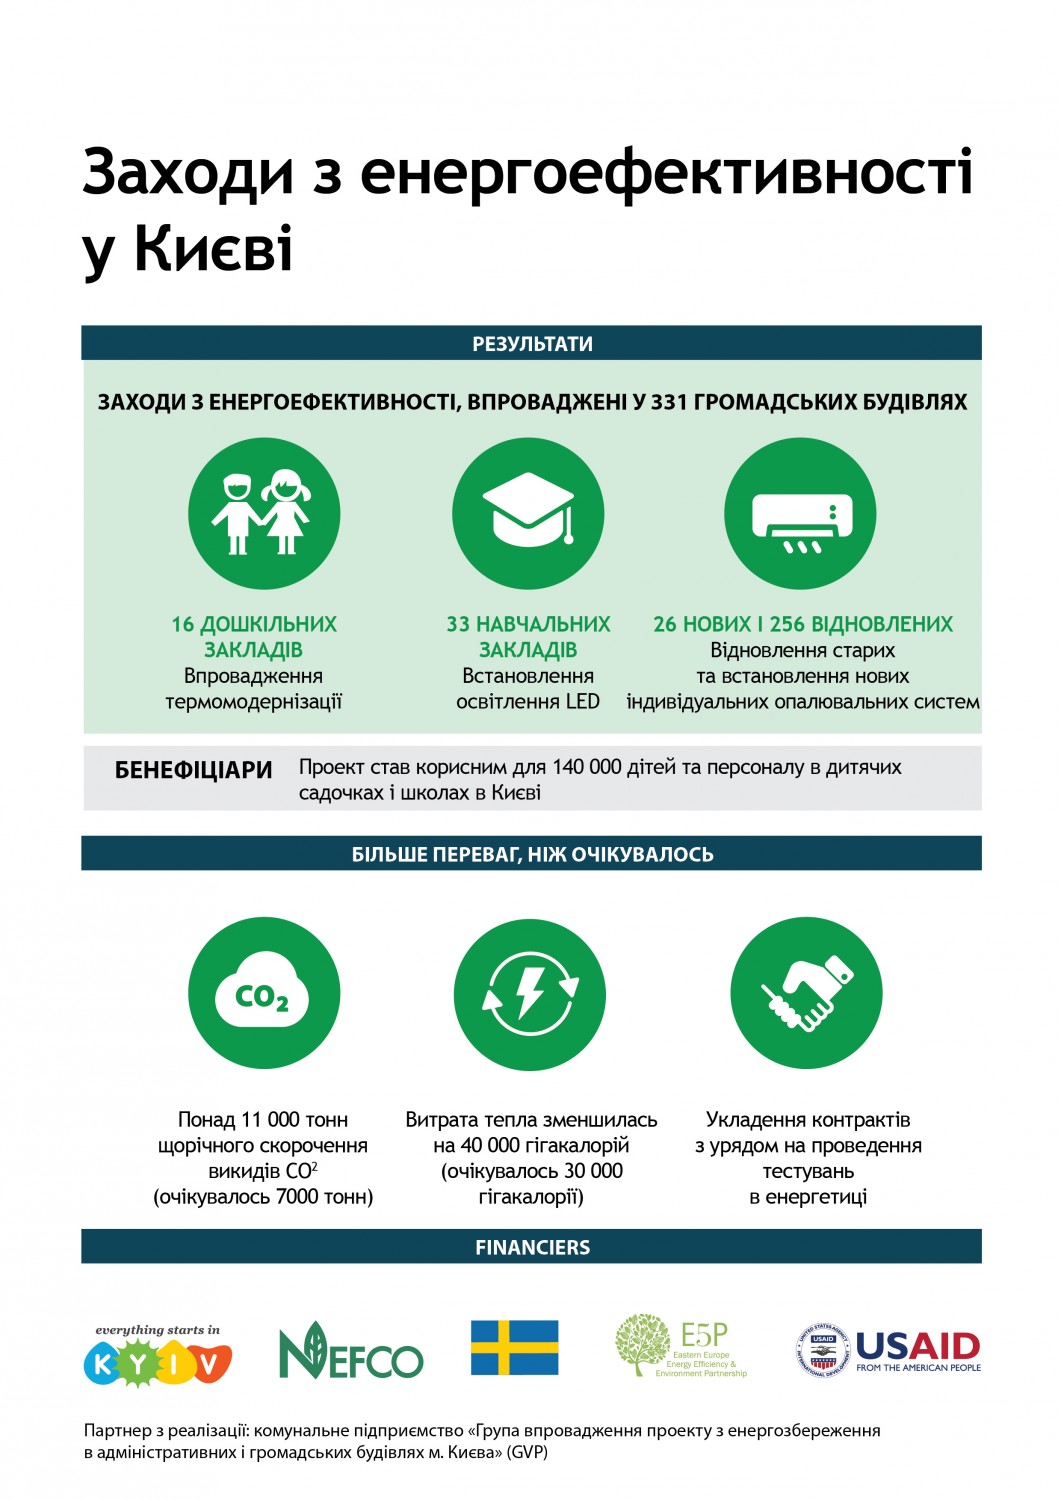 Енергоефективні та зручні дитячі садочки та школи у Києві